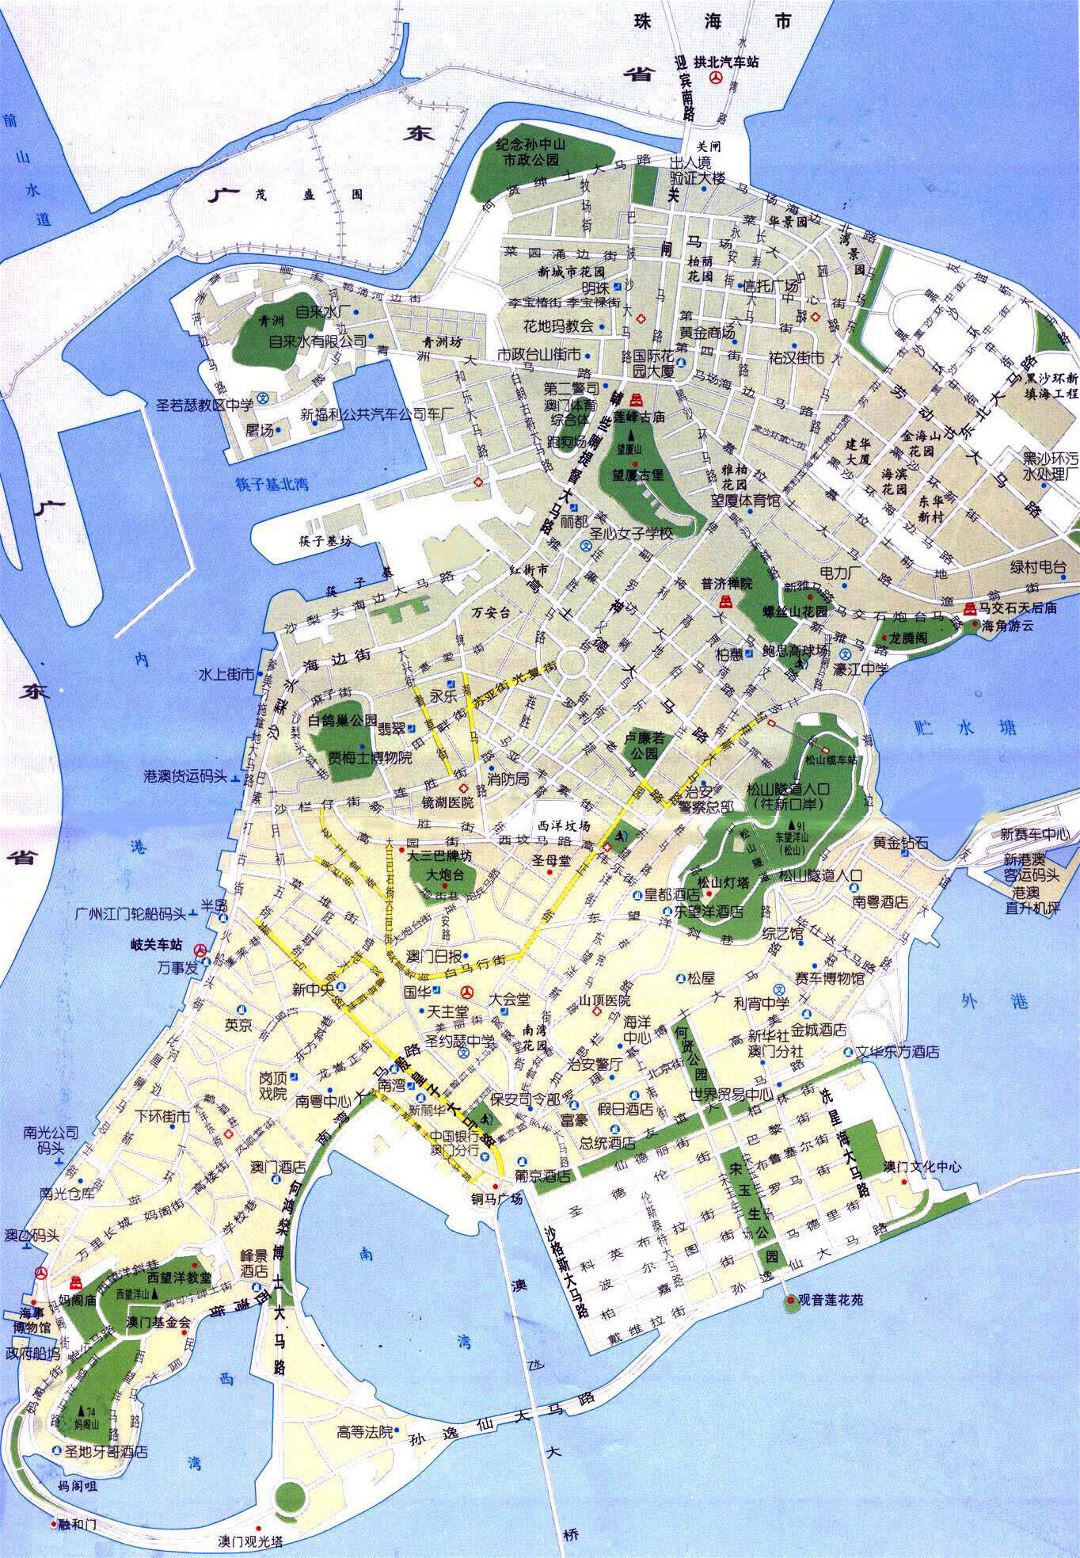 Большая детальная карта дорог Макао на китайском языке